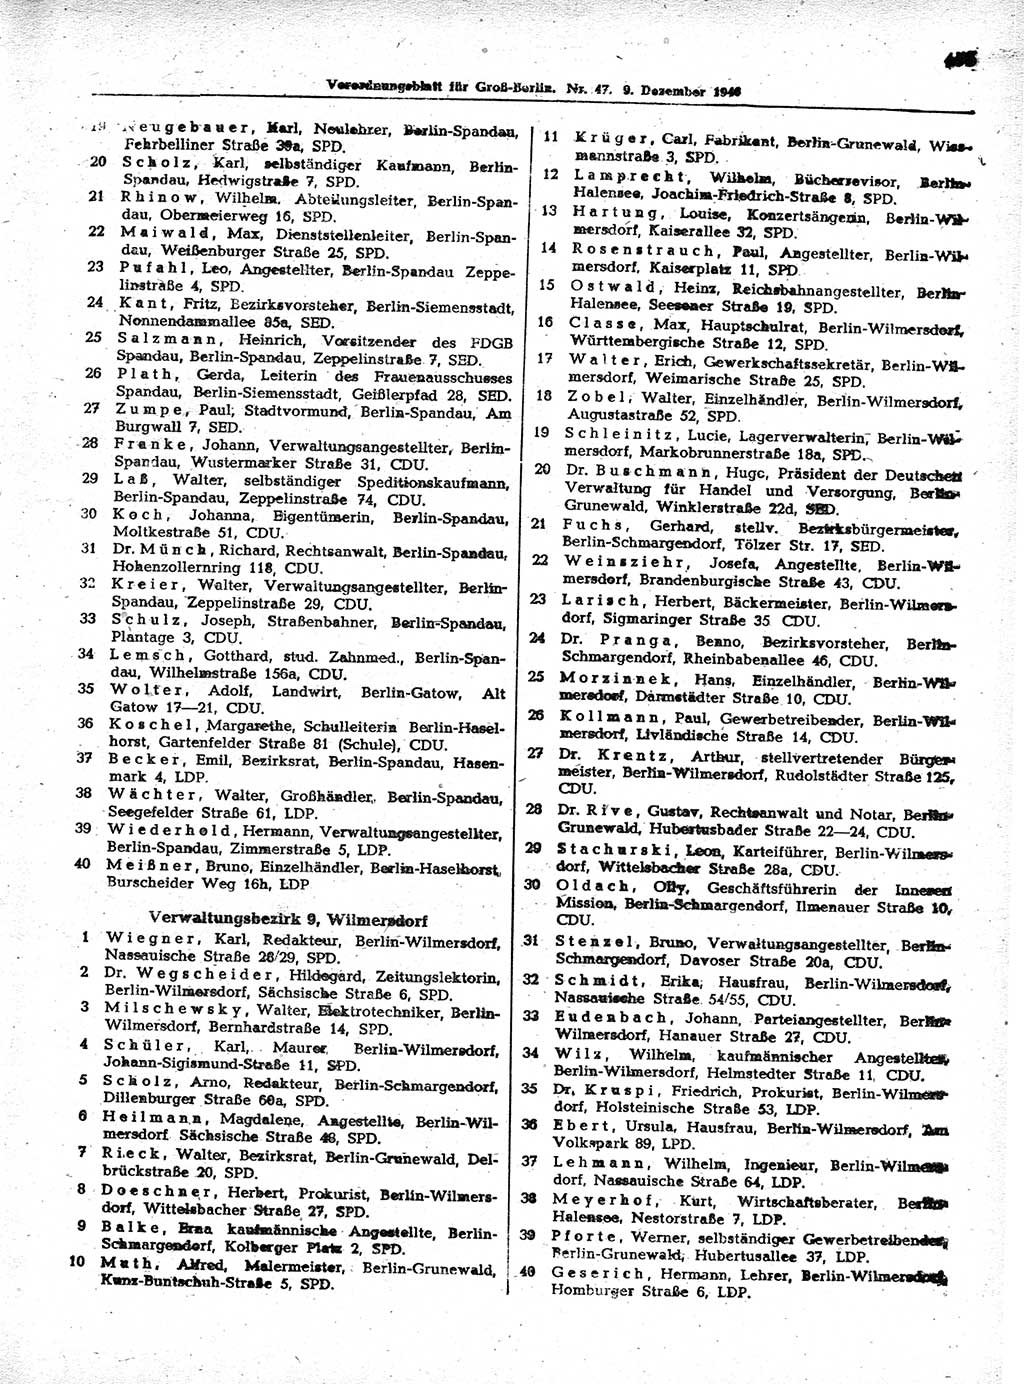 Verordnungsblatt (VOBl.) der Stadt Berlin, für Groß-Berlin 1946, Seite 453 (VOBl. Bln. 1946, S. 453)